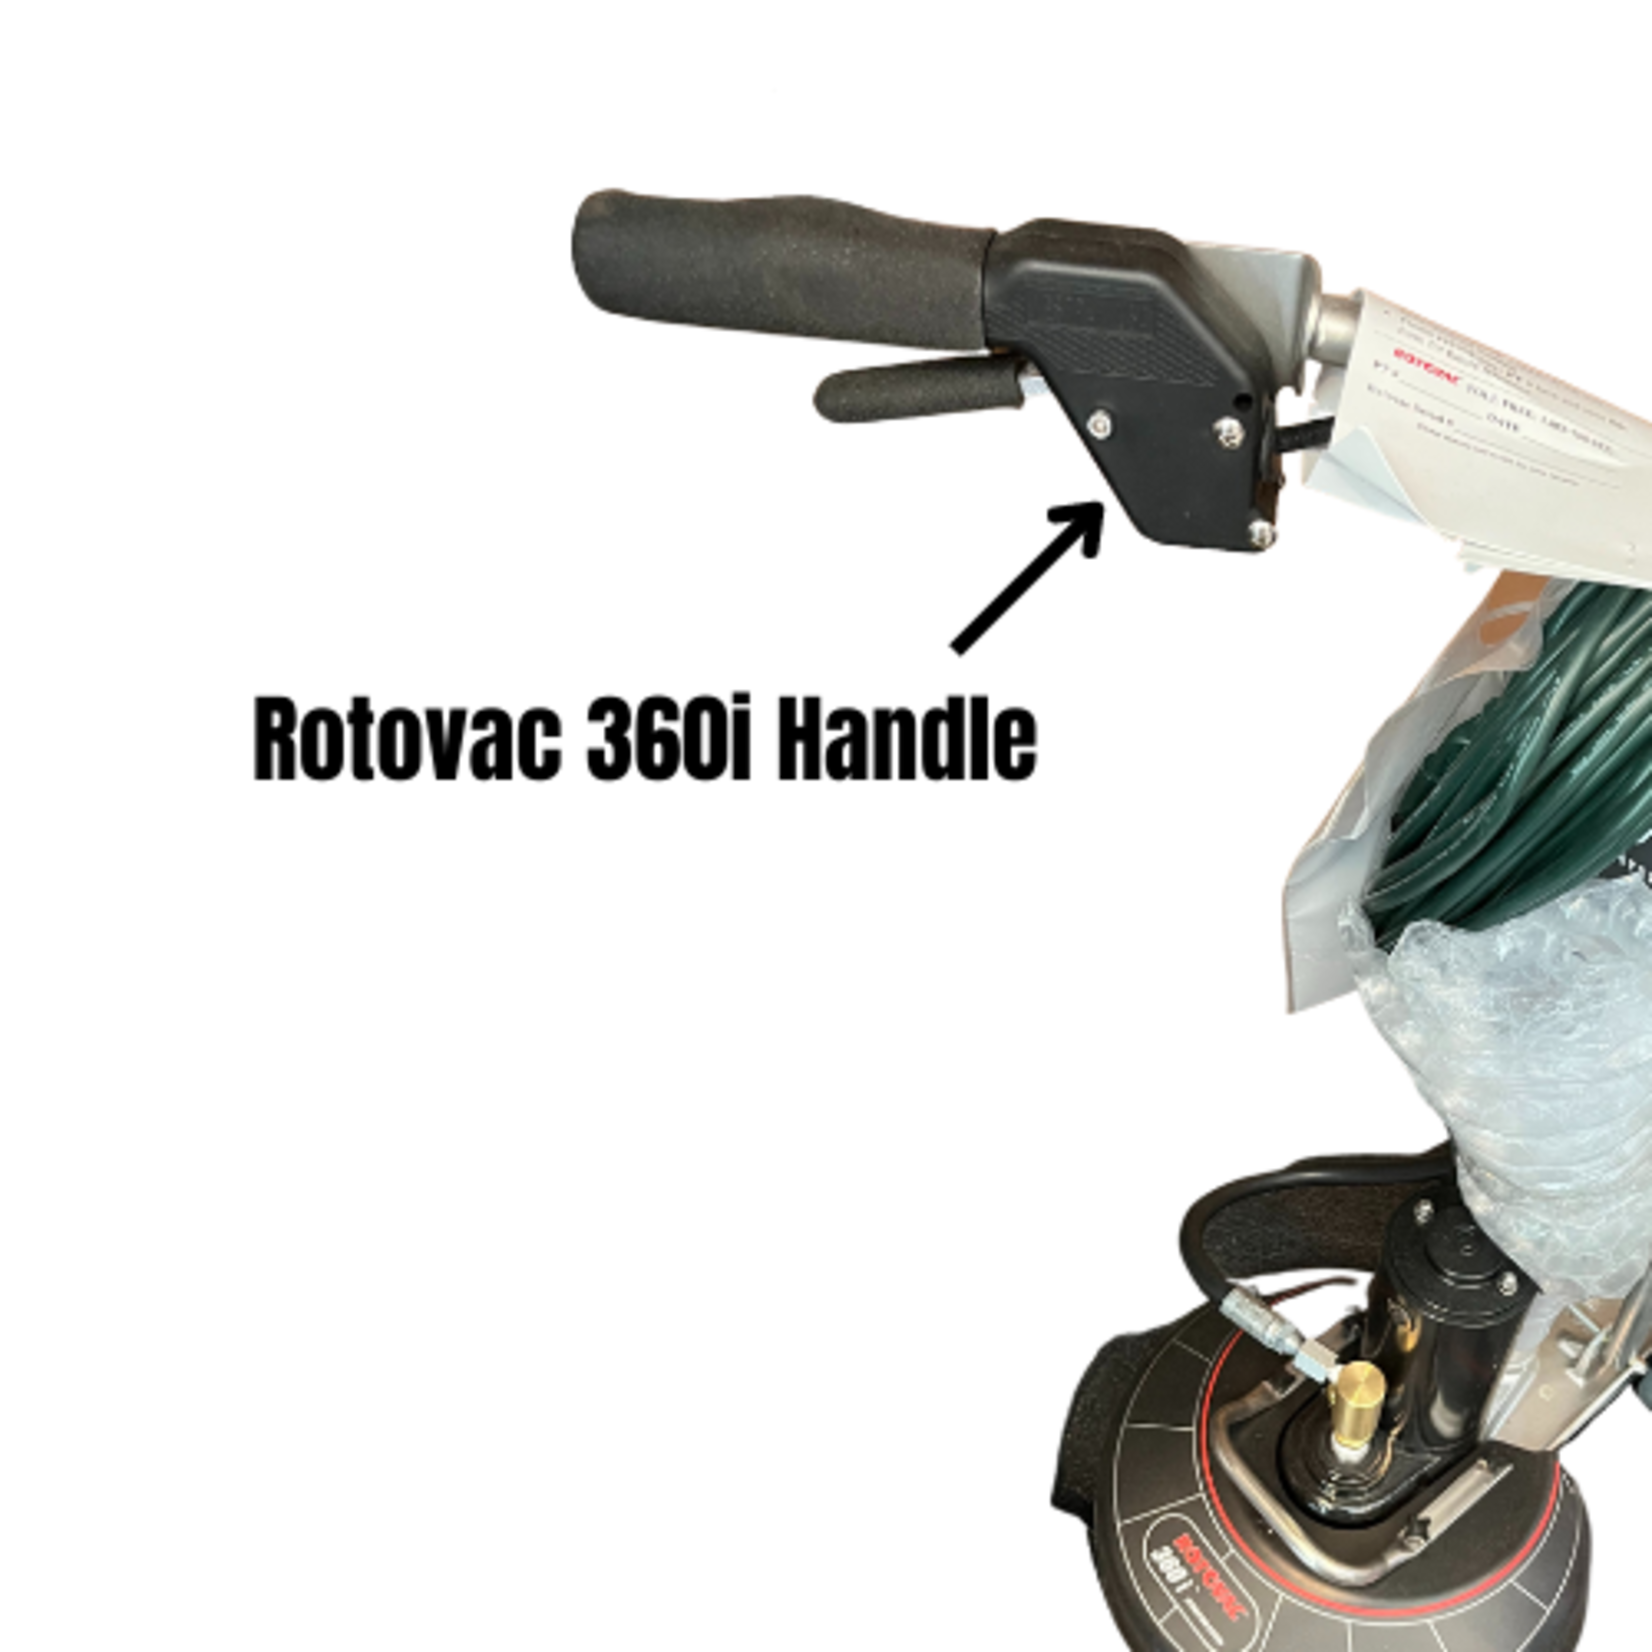 Rotovac Rotovac 360i handle